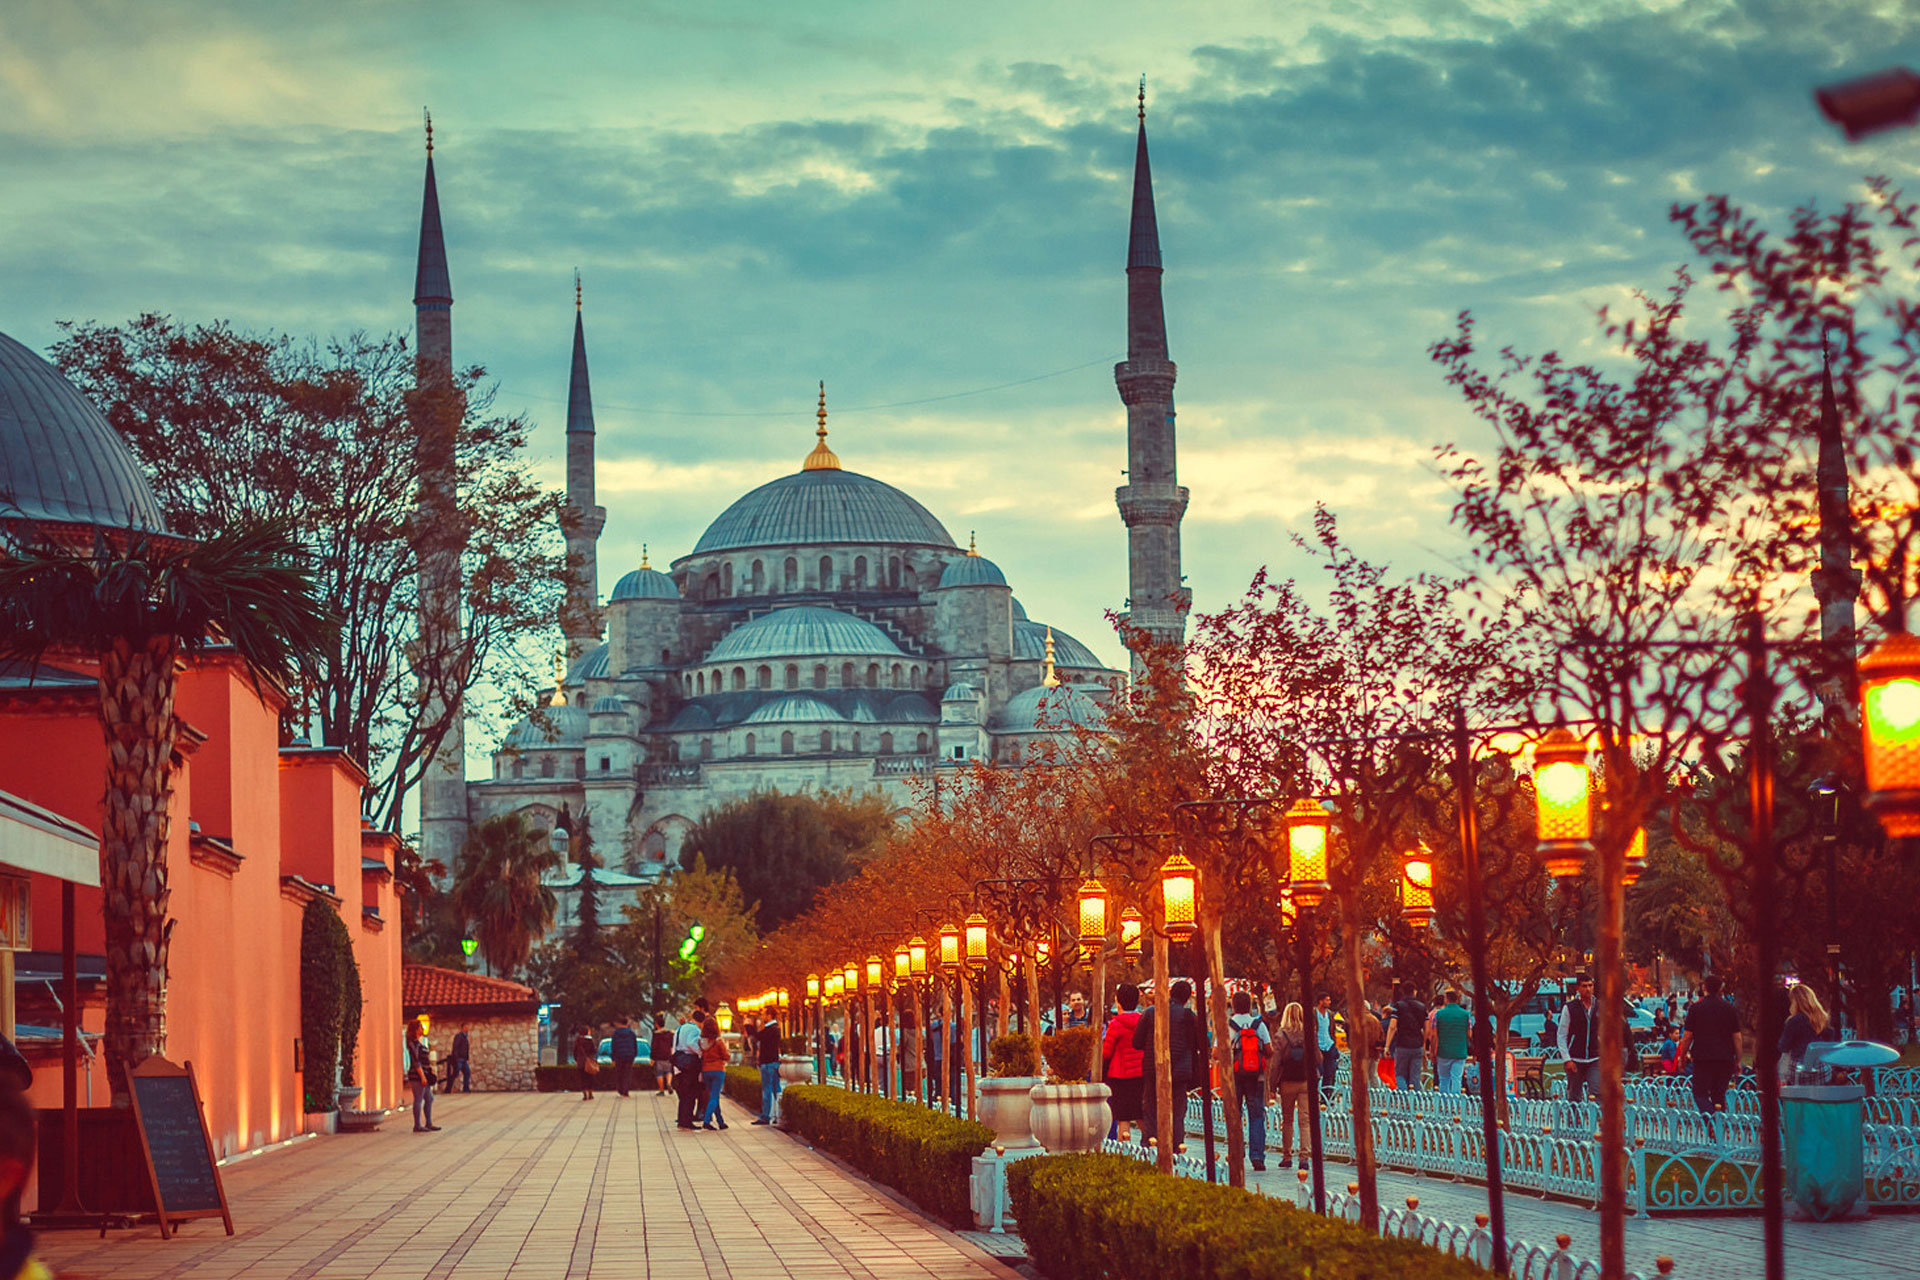 خرید خانه در ترکیه منجر به دریافت اقامت در این کشور میشود